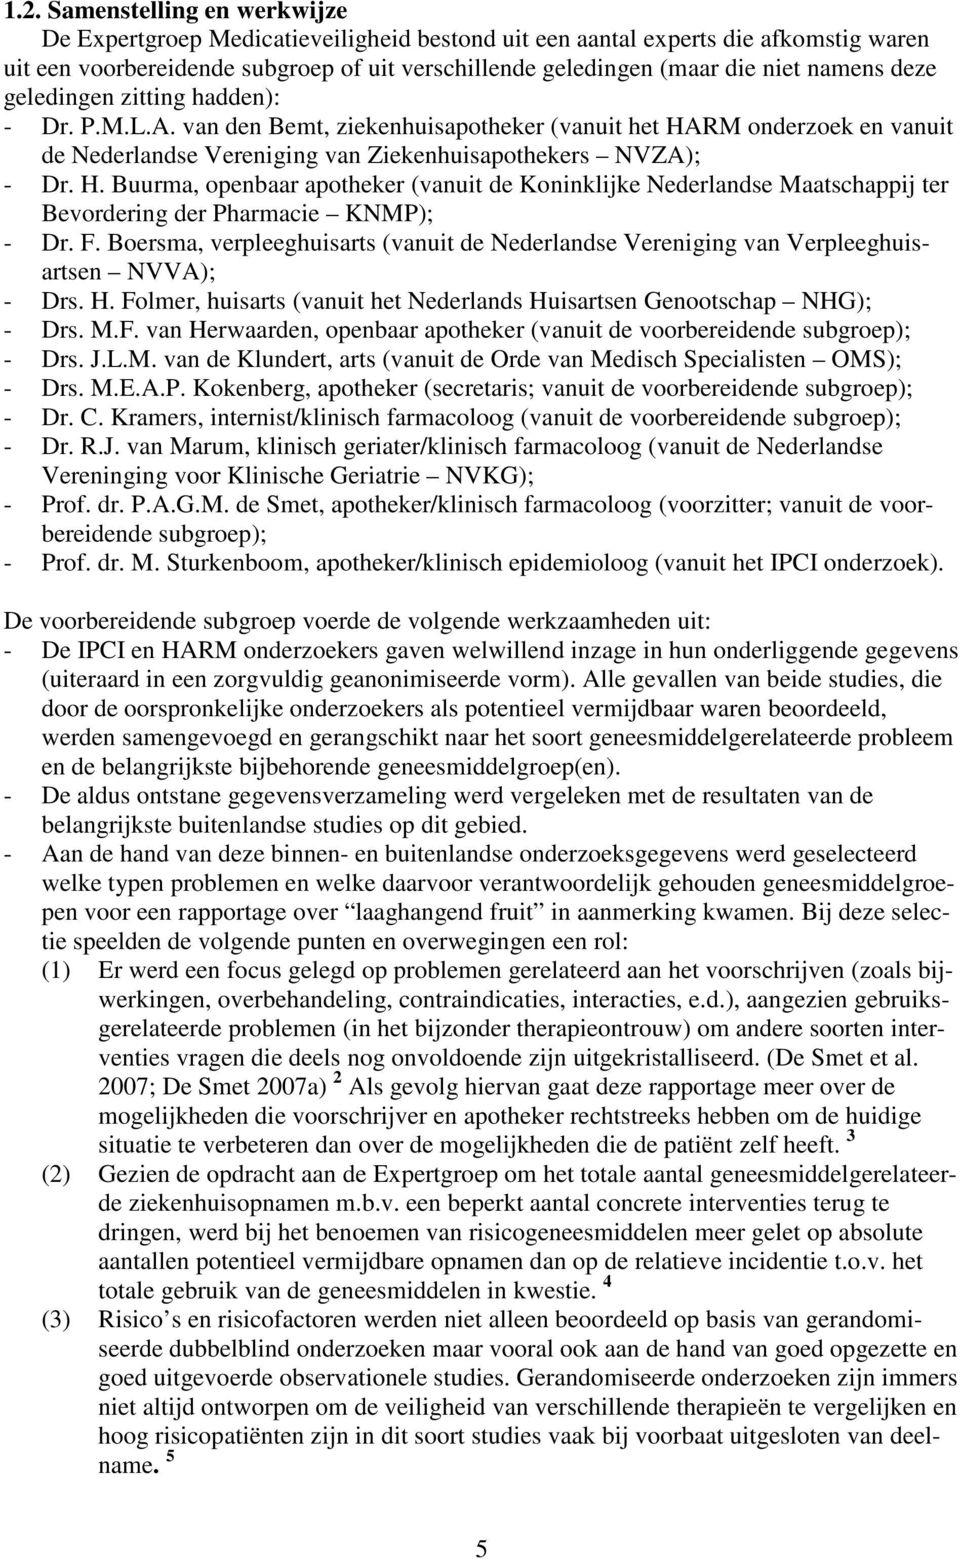 RM onderzoek en vanuit de Nederlandse Vereniging van Ziekenhuisapothekers NVZA); - Dr. H.